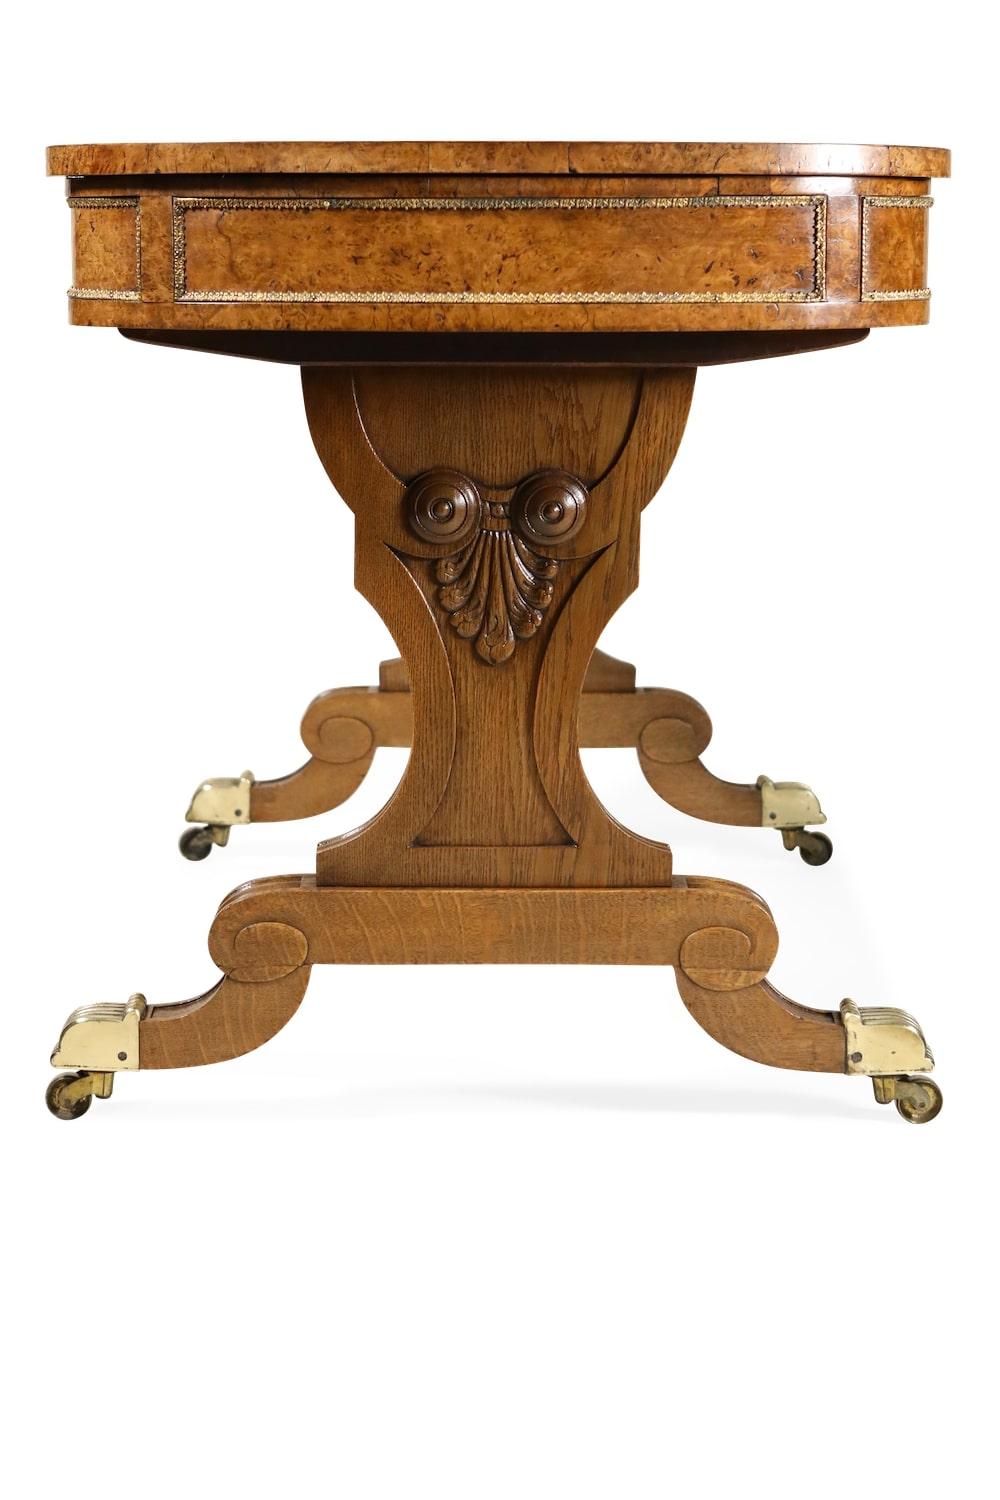 Eine ungewöhnliche frühen 19. Jahrhundert Messing montiert pollard Eiche Schreibtisch, Gillows zugeschrieben, die aufklappbaren rechteckigen Ledereinsatz Schreibplatte mit einem verstellbaren Schreib Hang auf einer Ratsche flankiert von